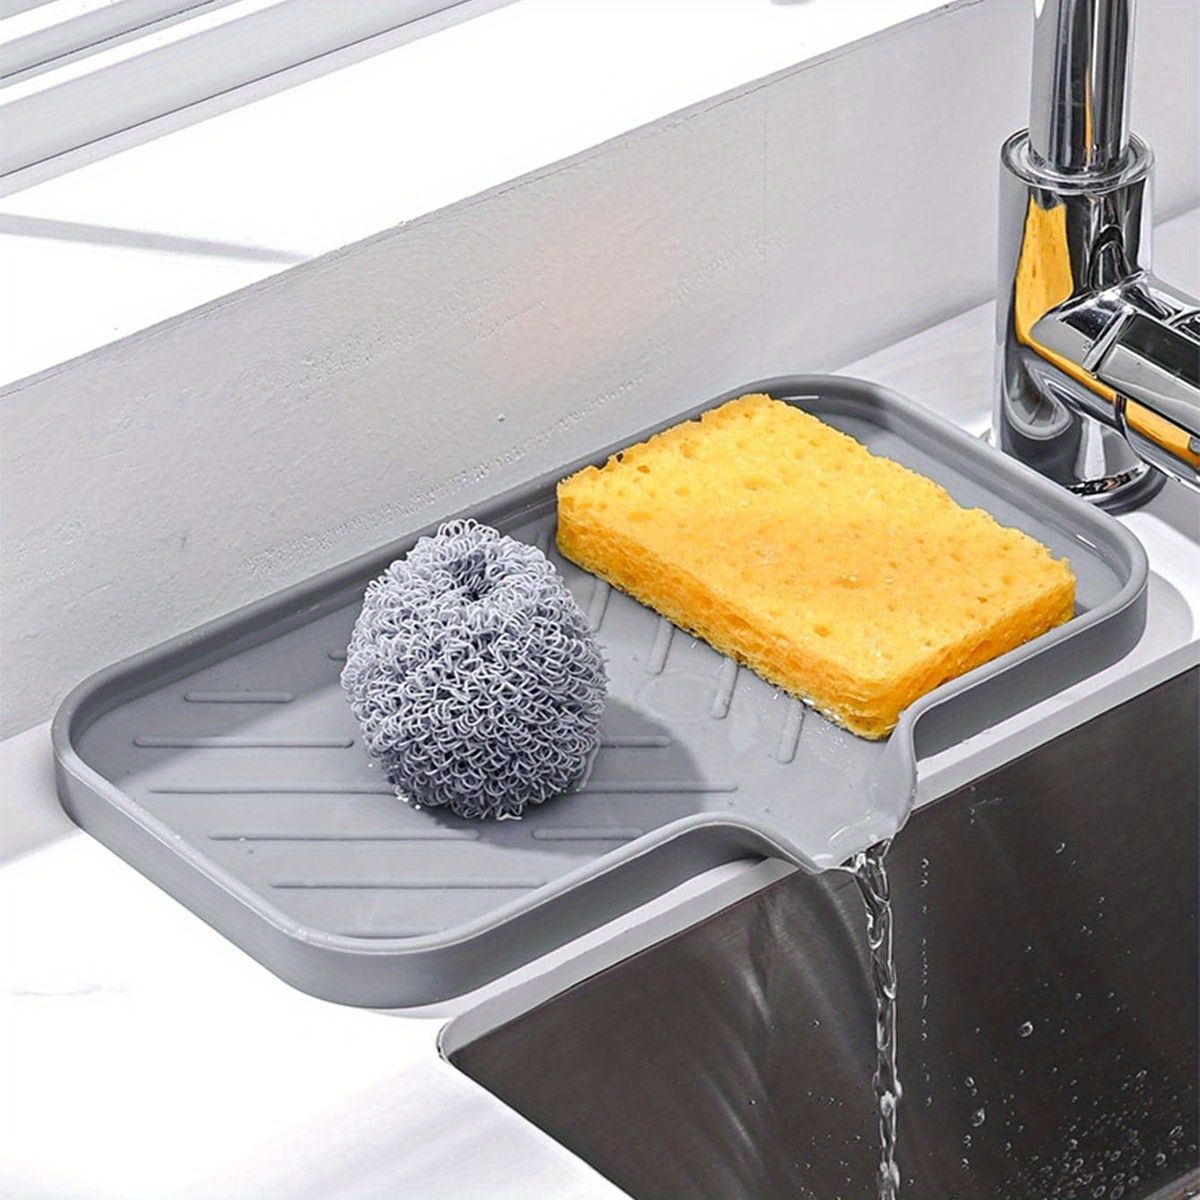 China Kitchen Sink Organizer Tray,Sponge Holder for Kitchen Sink Bathroom Counter Tray Sponge Silicone Soap Holder Gray 2pc